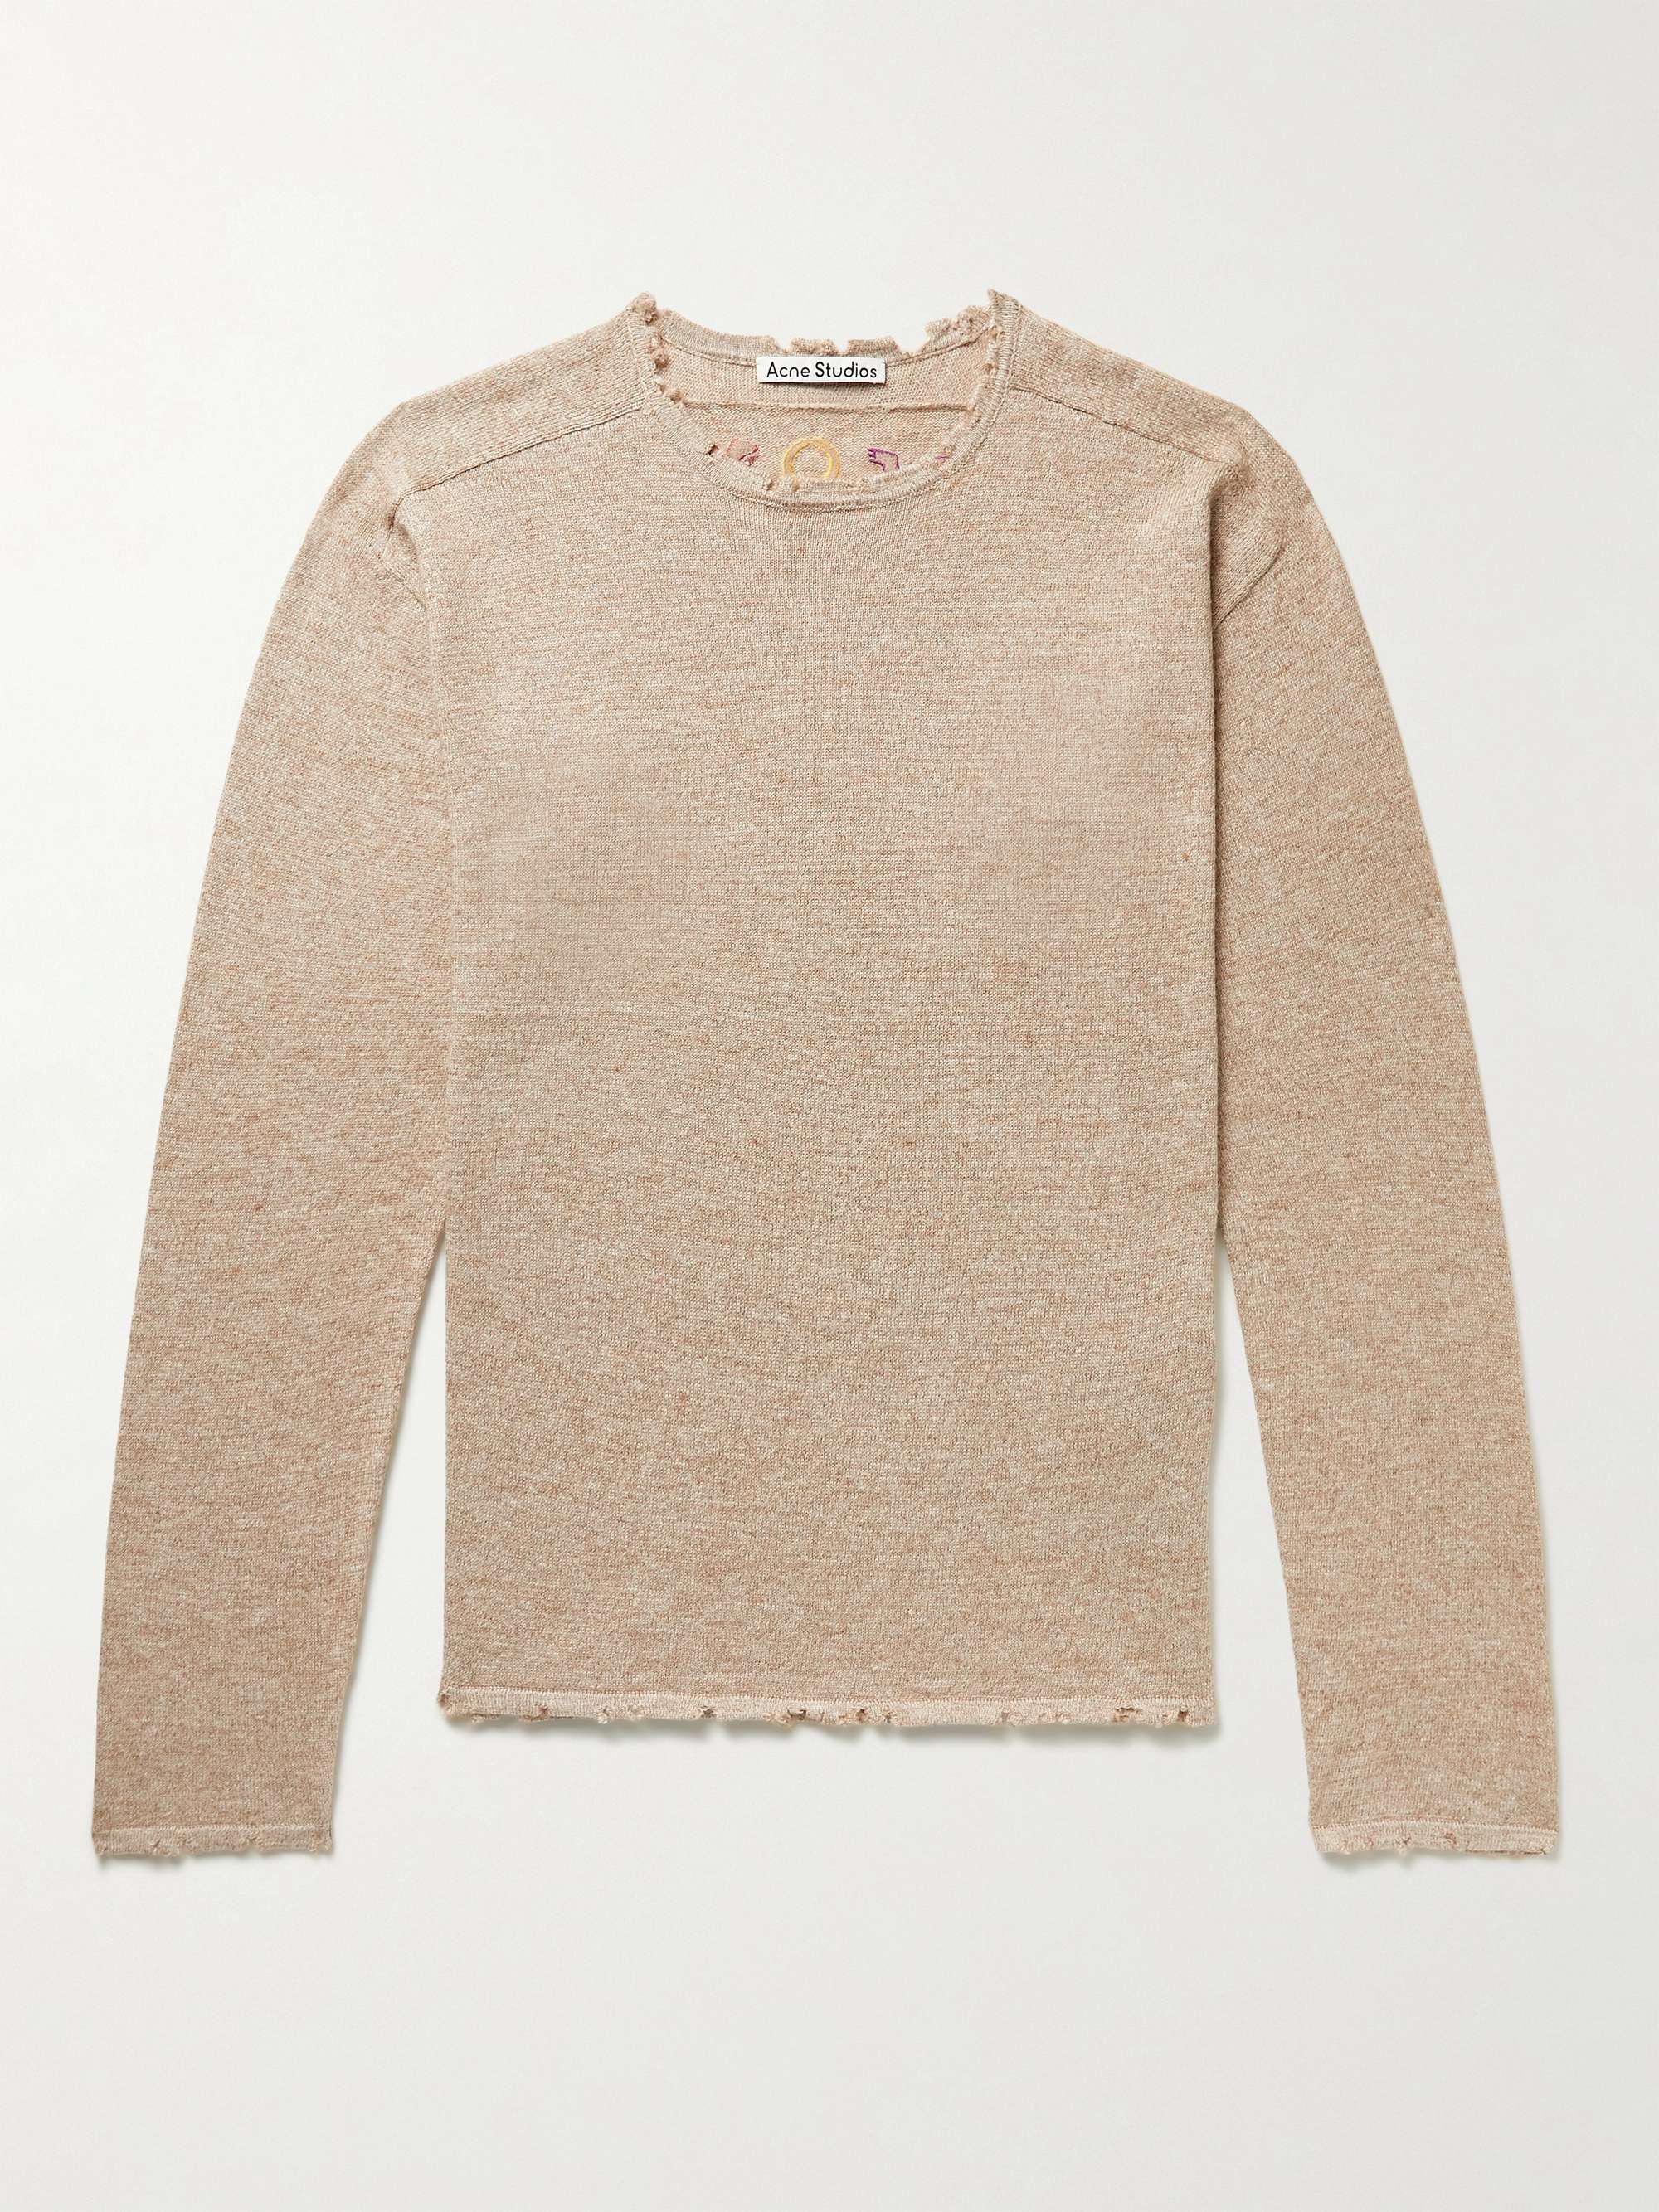 아크네 스튜디오 스웨터 Acne Studios Kelliot Distressed Embroidered Linen Alpaca Cotton and Wool-Blend Sweater,Tan